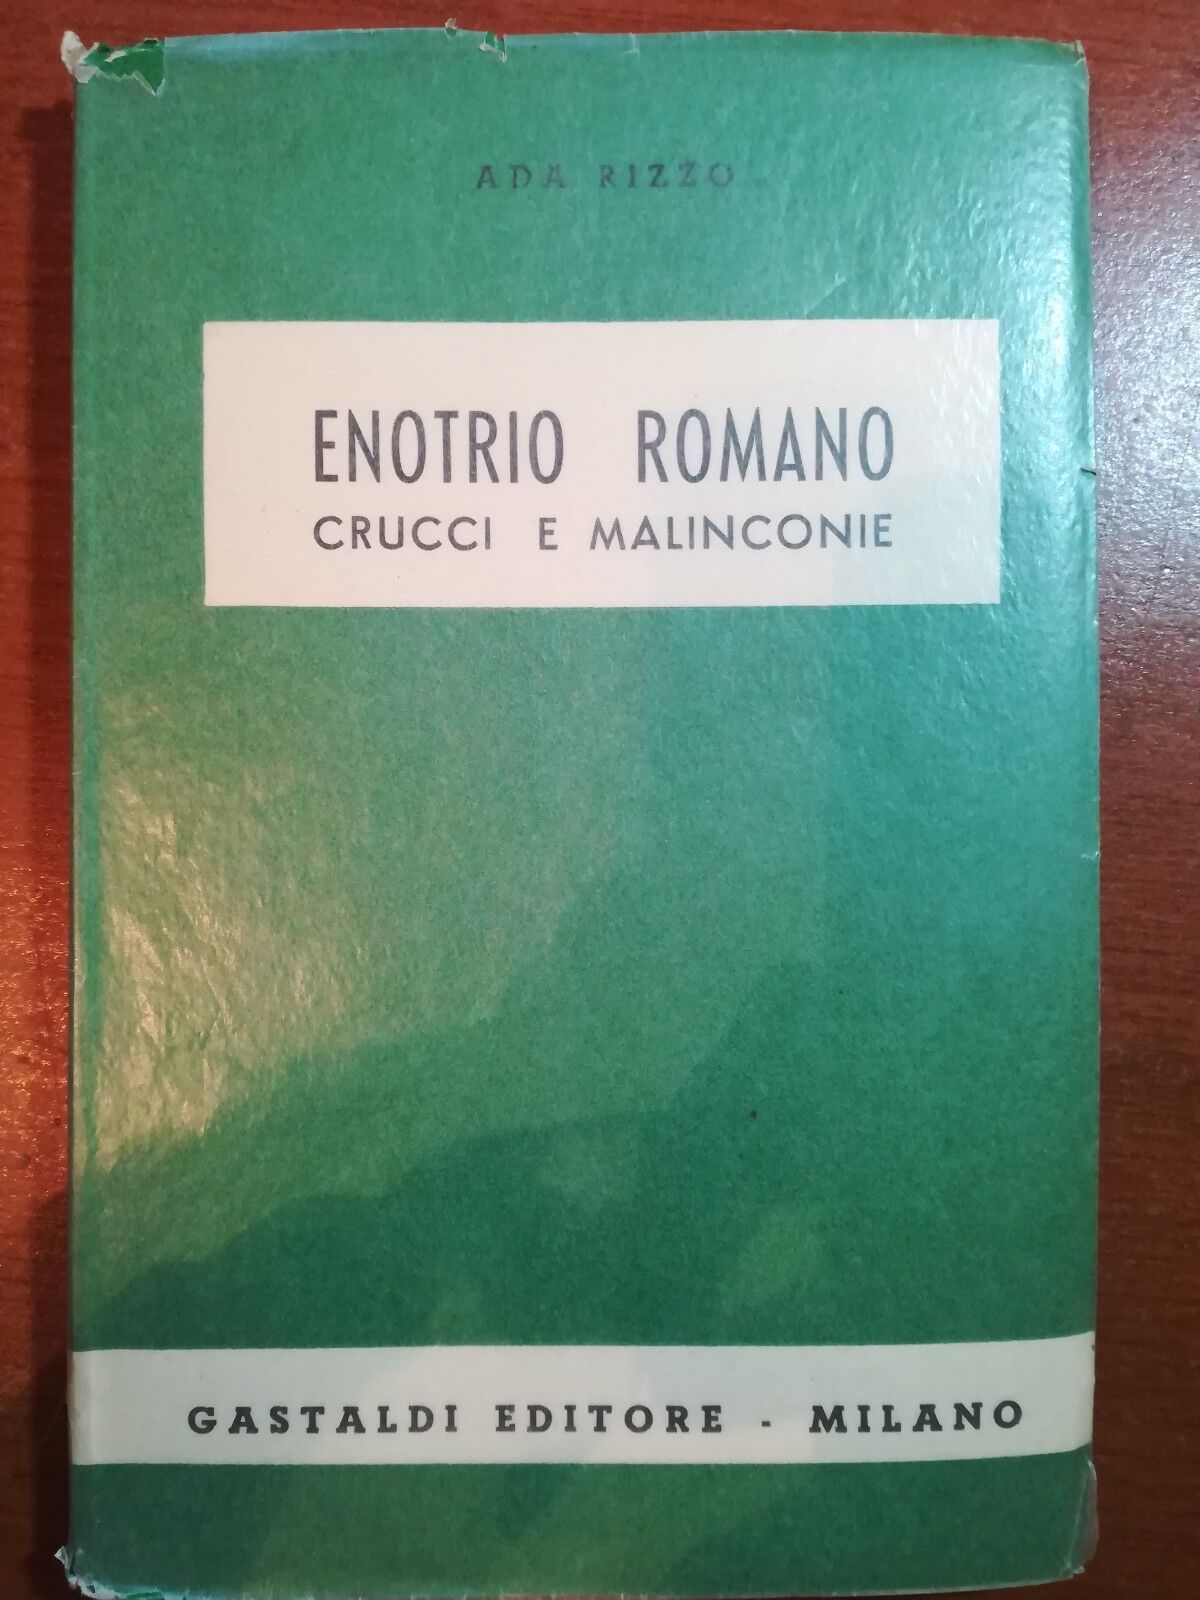 Enotrio Romano Crucci e malinconie - Ada Rizzo - Gastaldi - 1952 - M